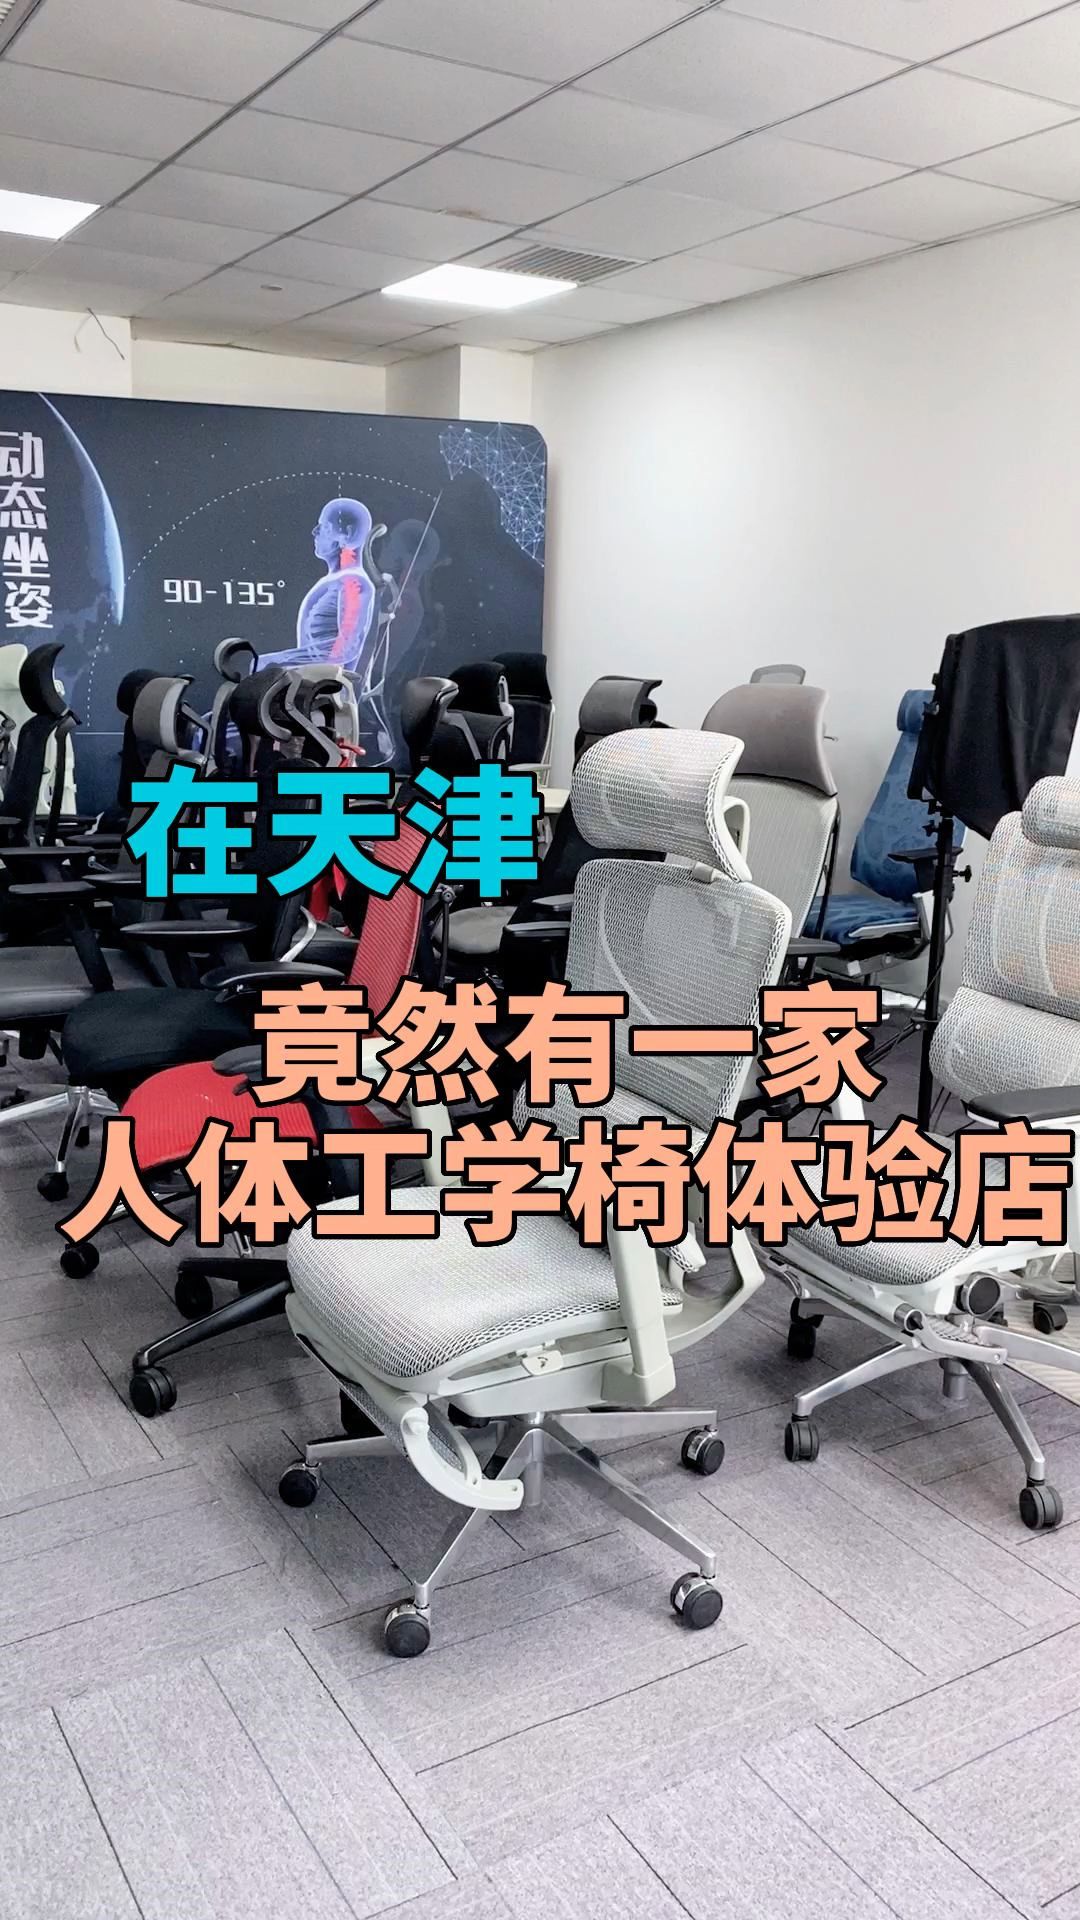 天津人体工学椅体验店